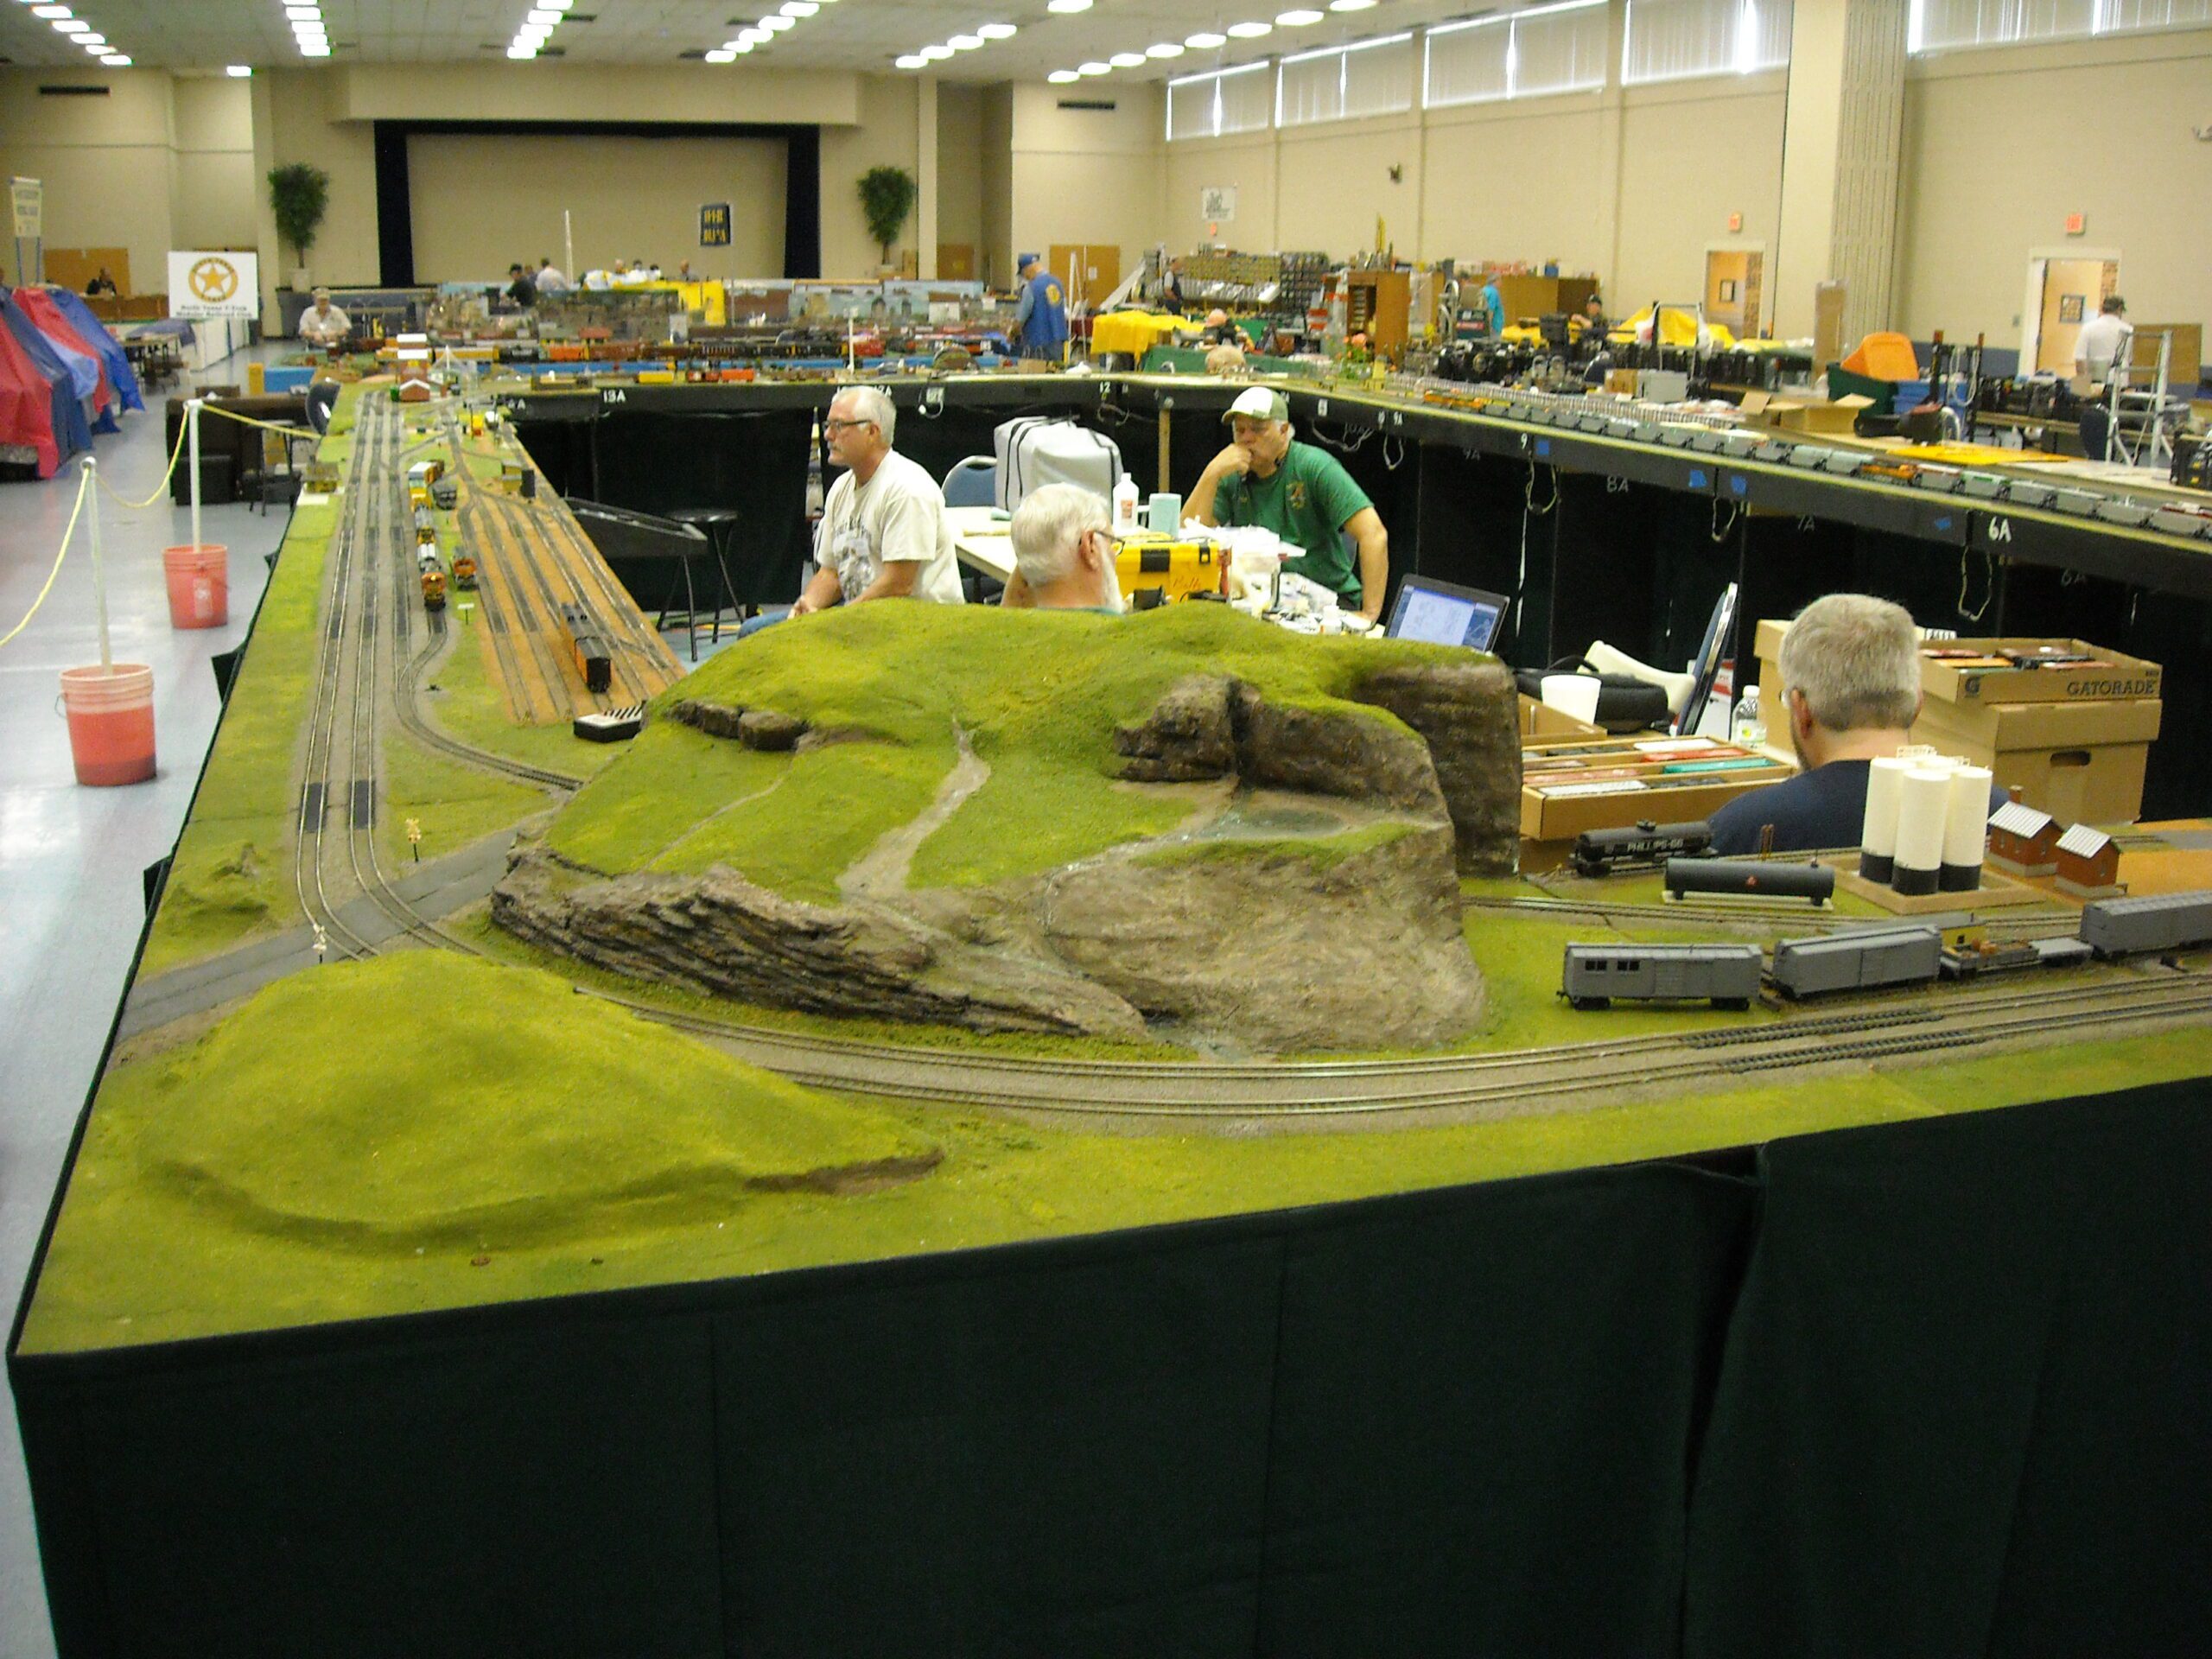 Model train set up